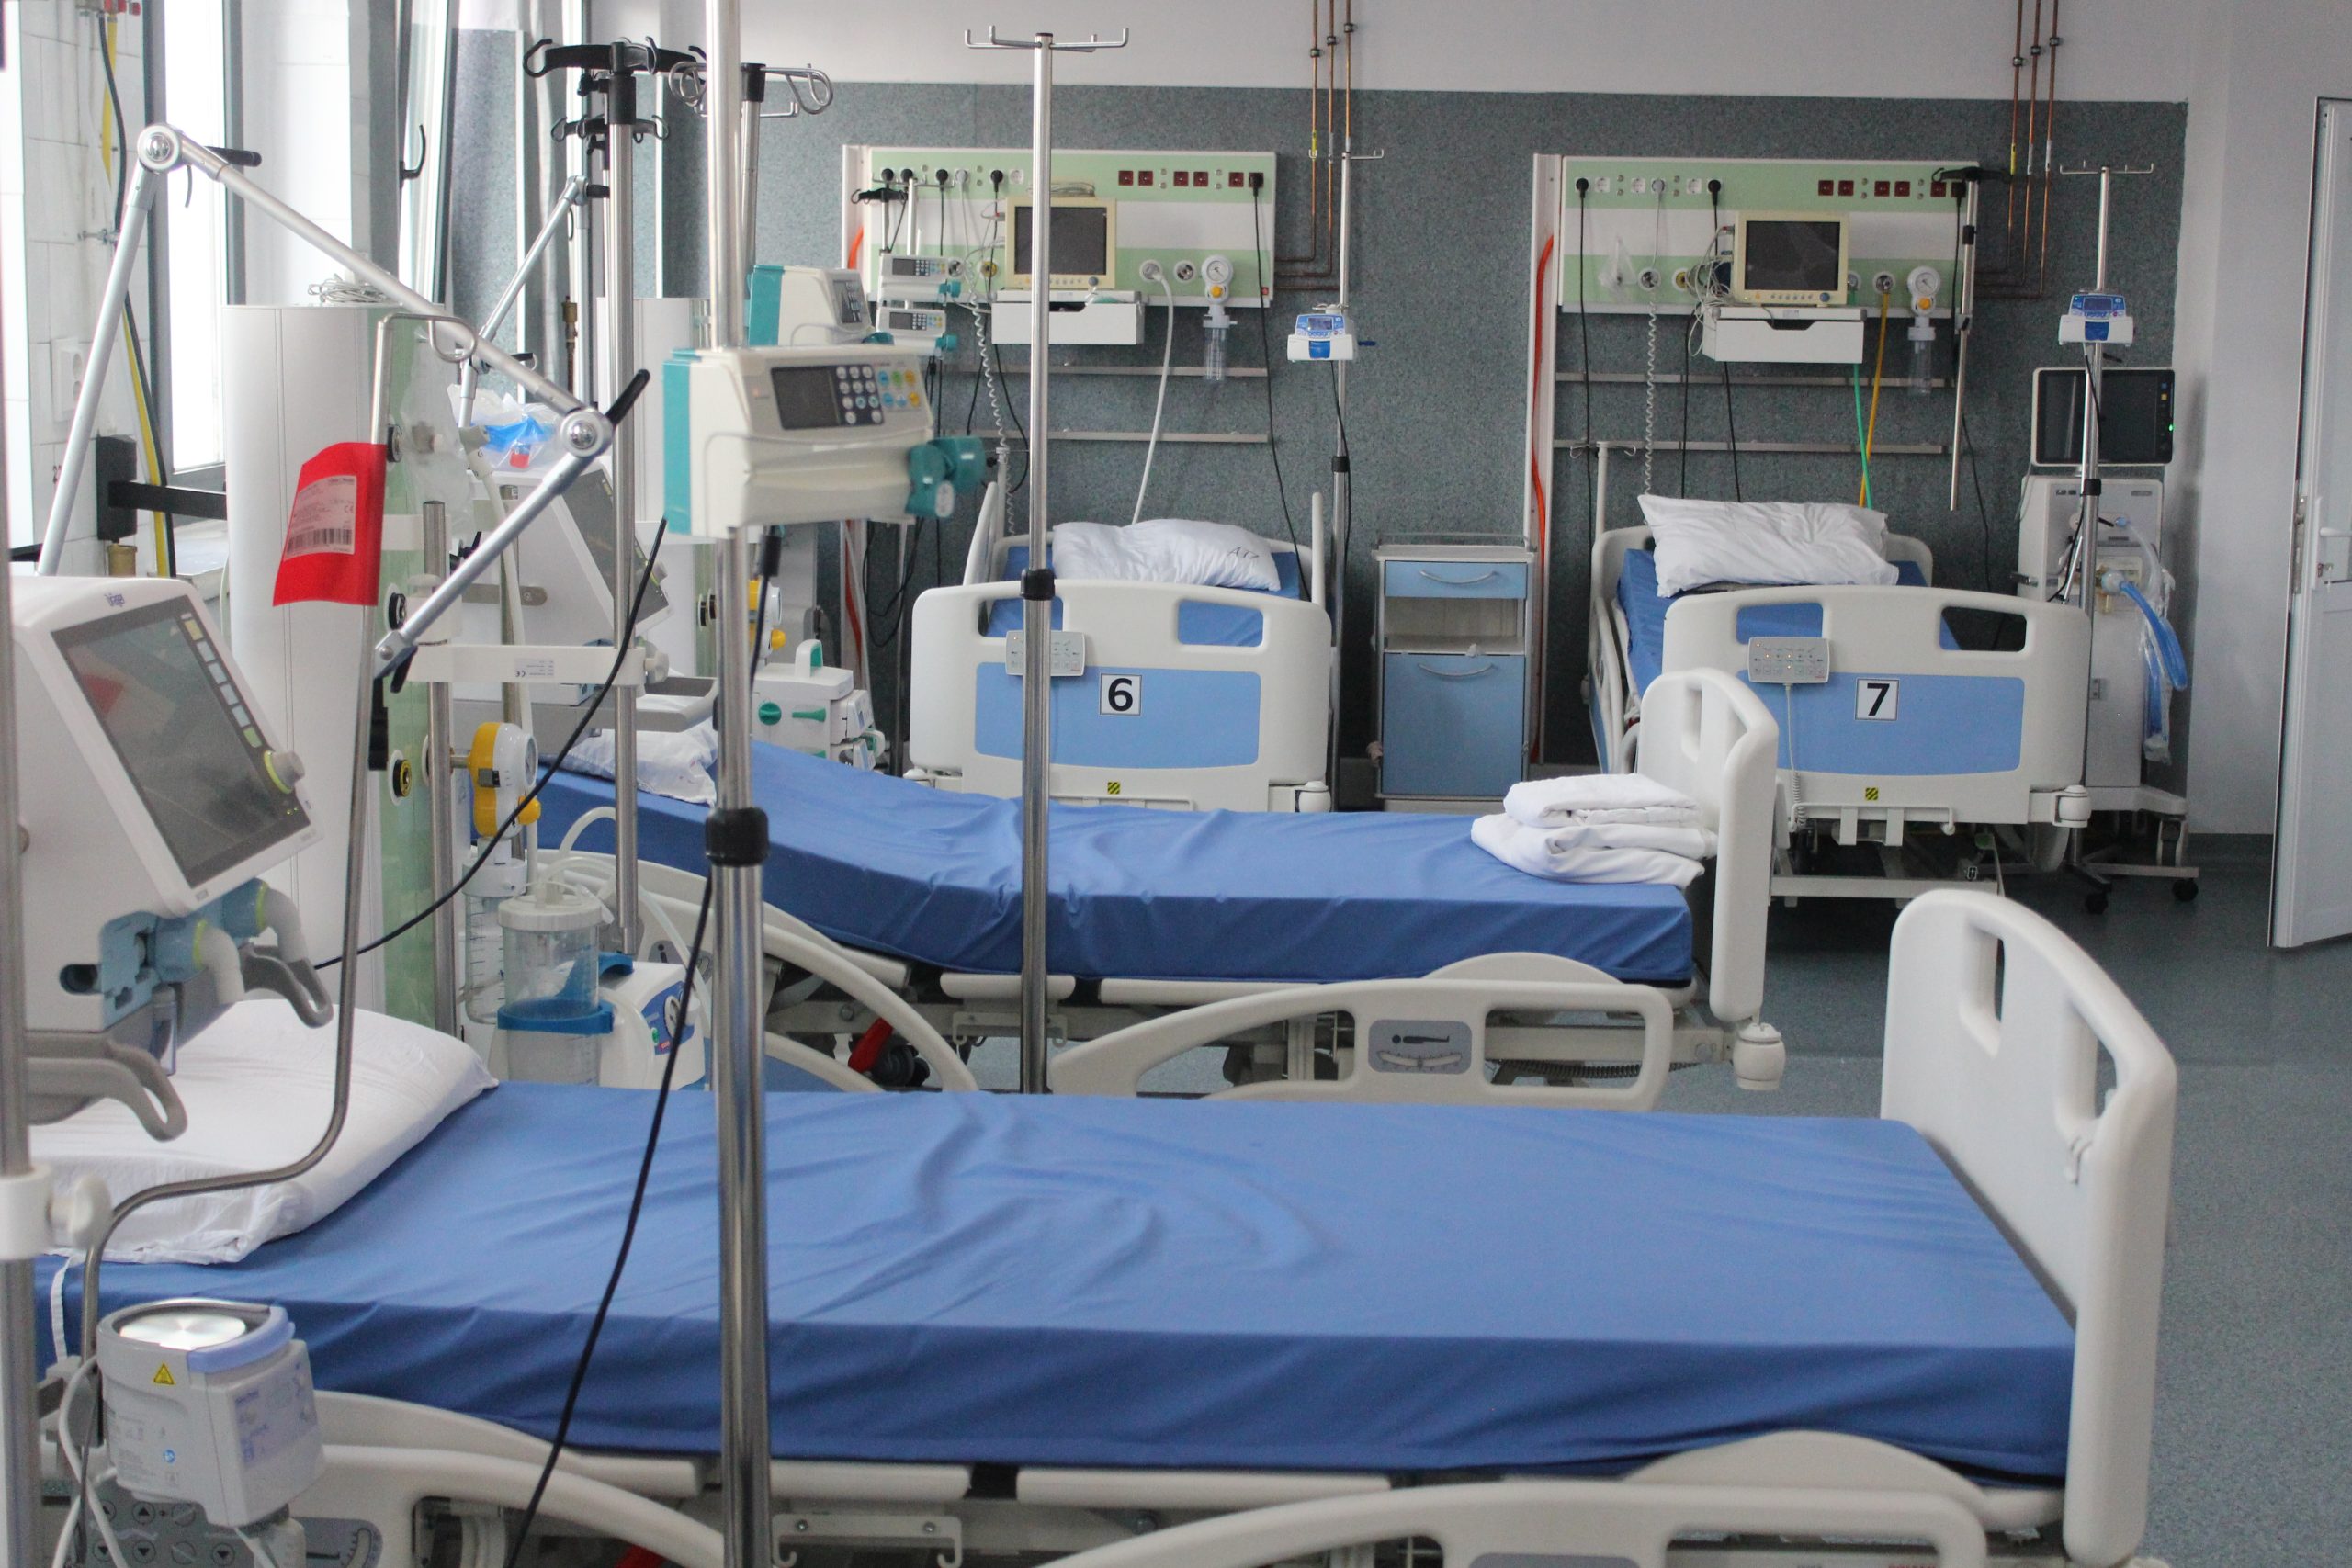 Secția ATI a Spitalului Municipal Caracal, secție etalon în ceea ce privește dotarea materială și personalul medical